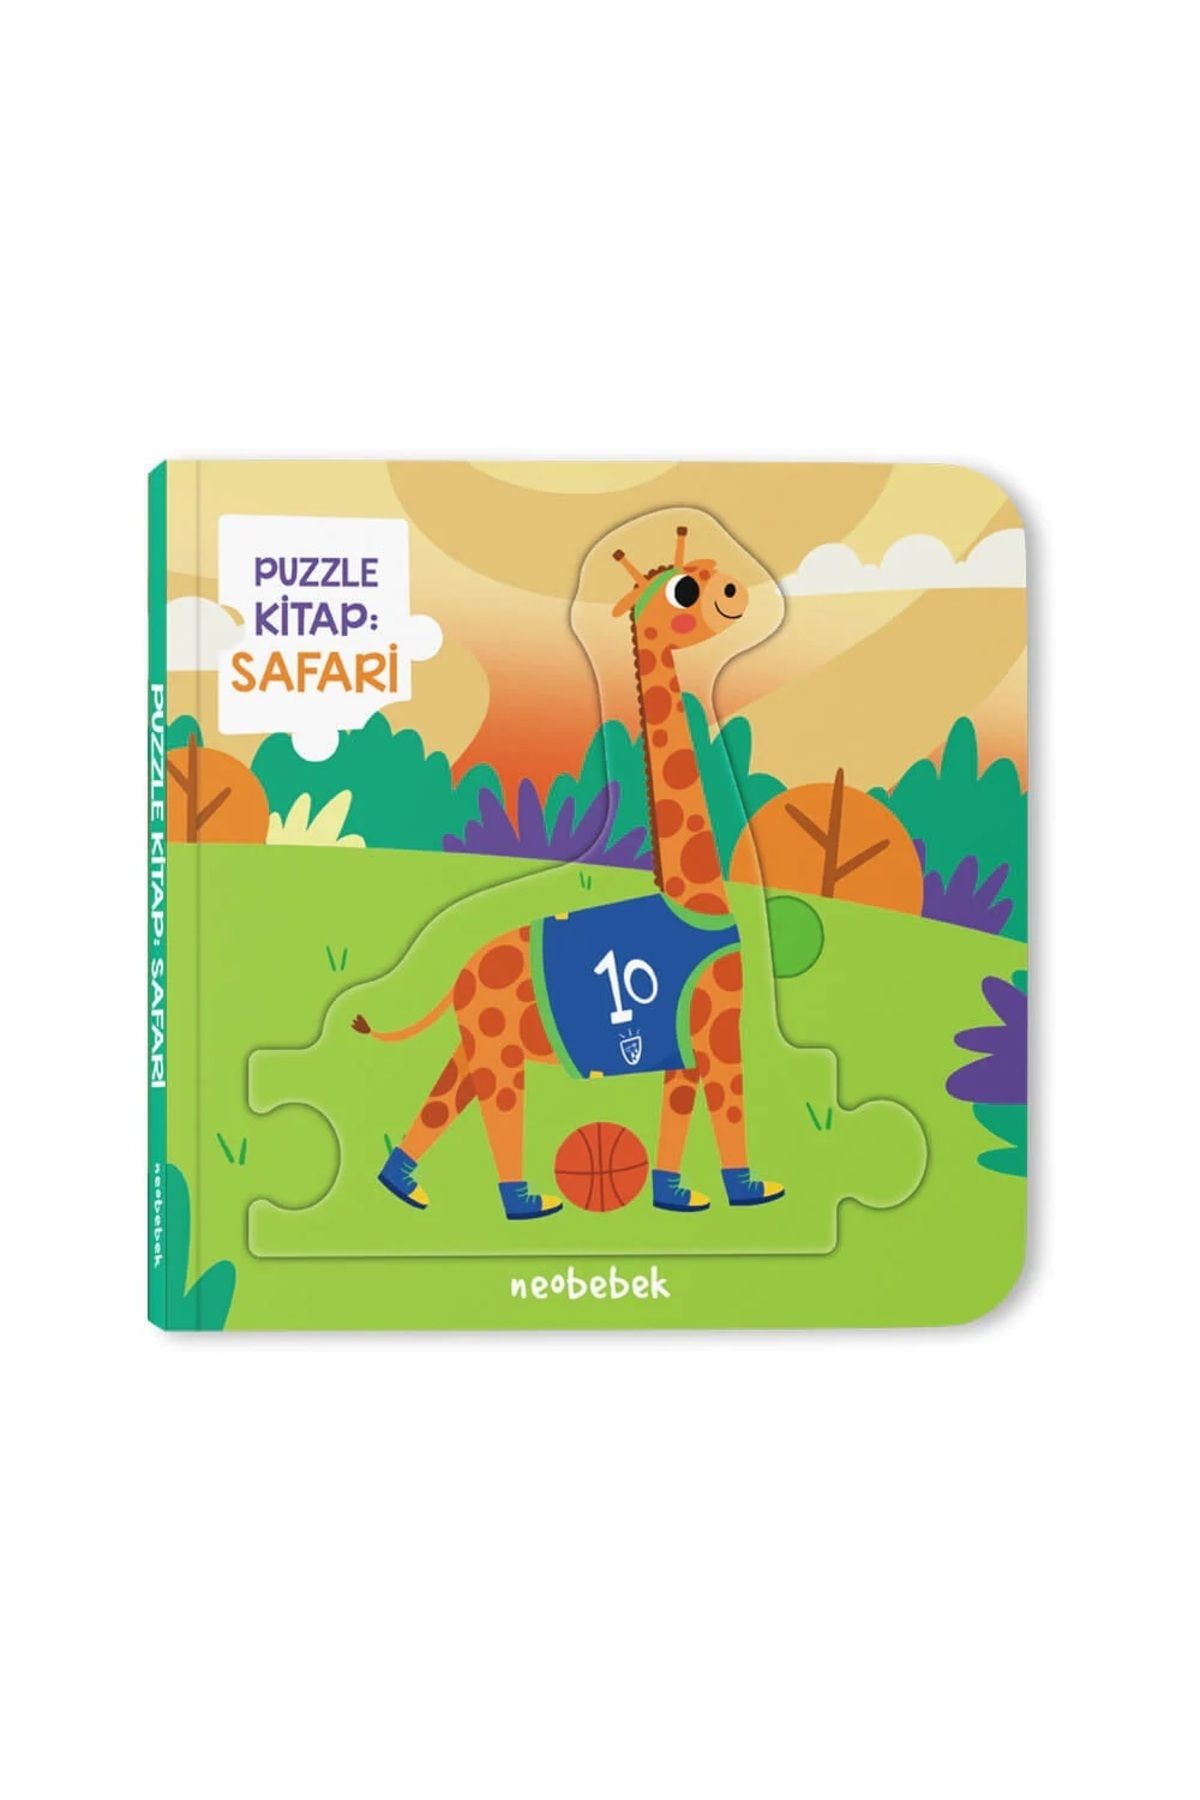 Neobebek Puzzle Kitap - Safari